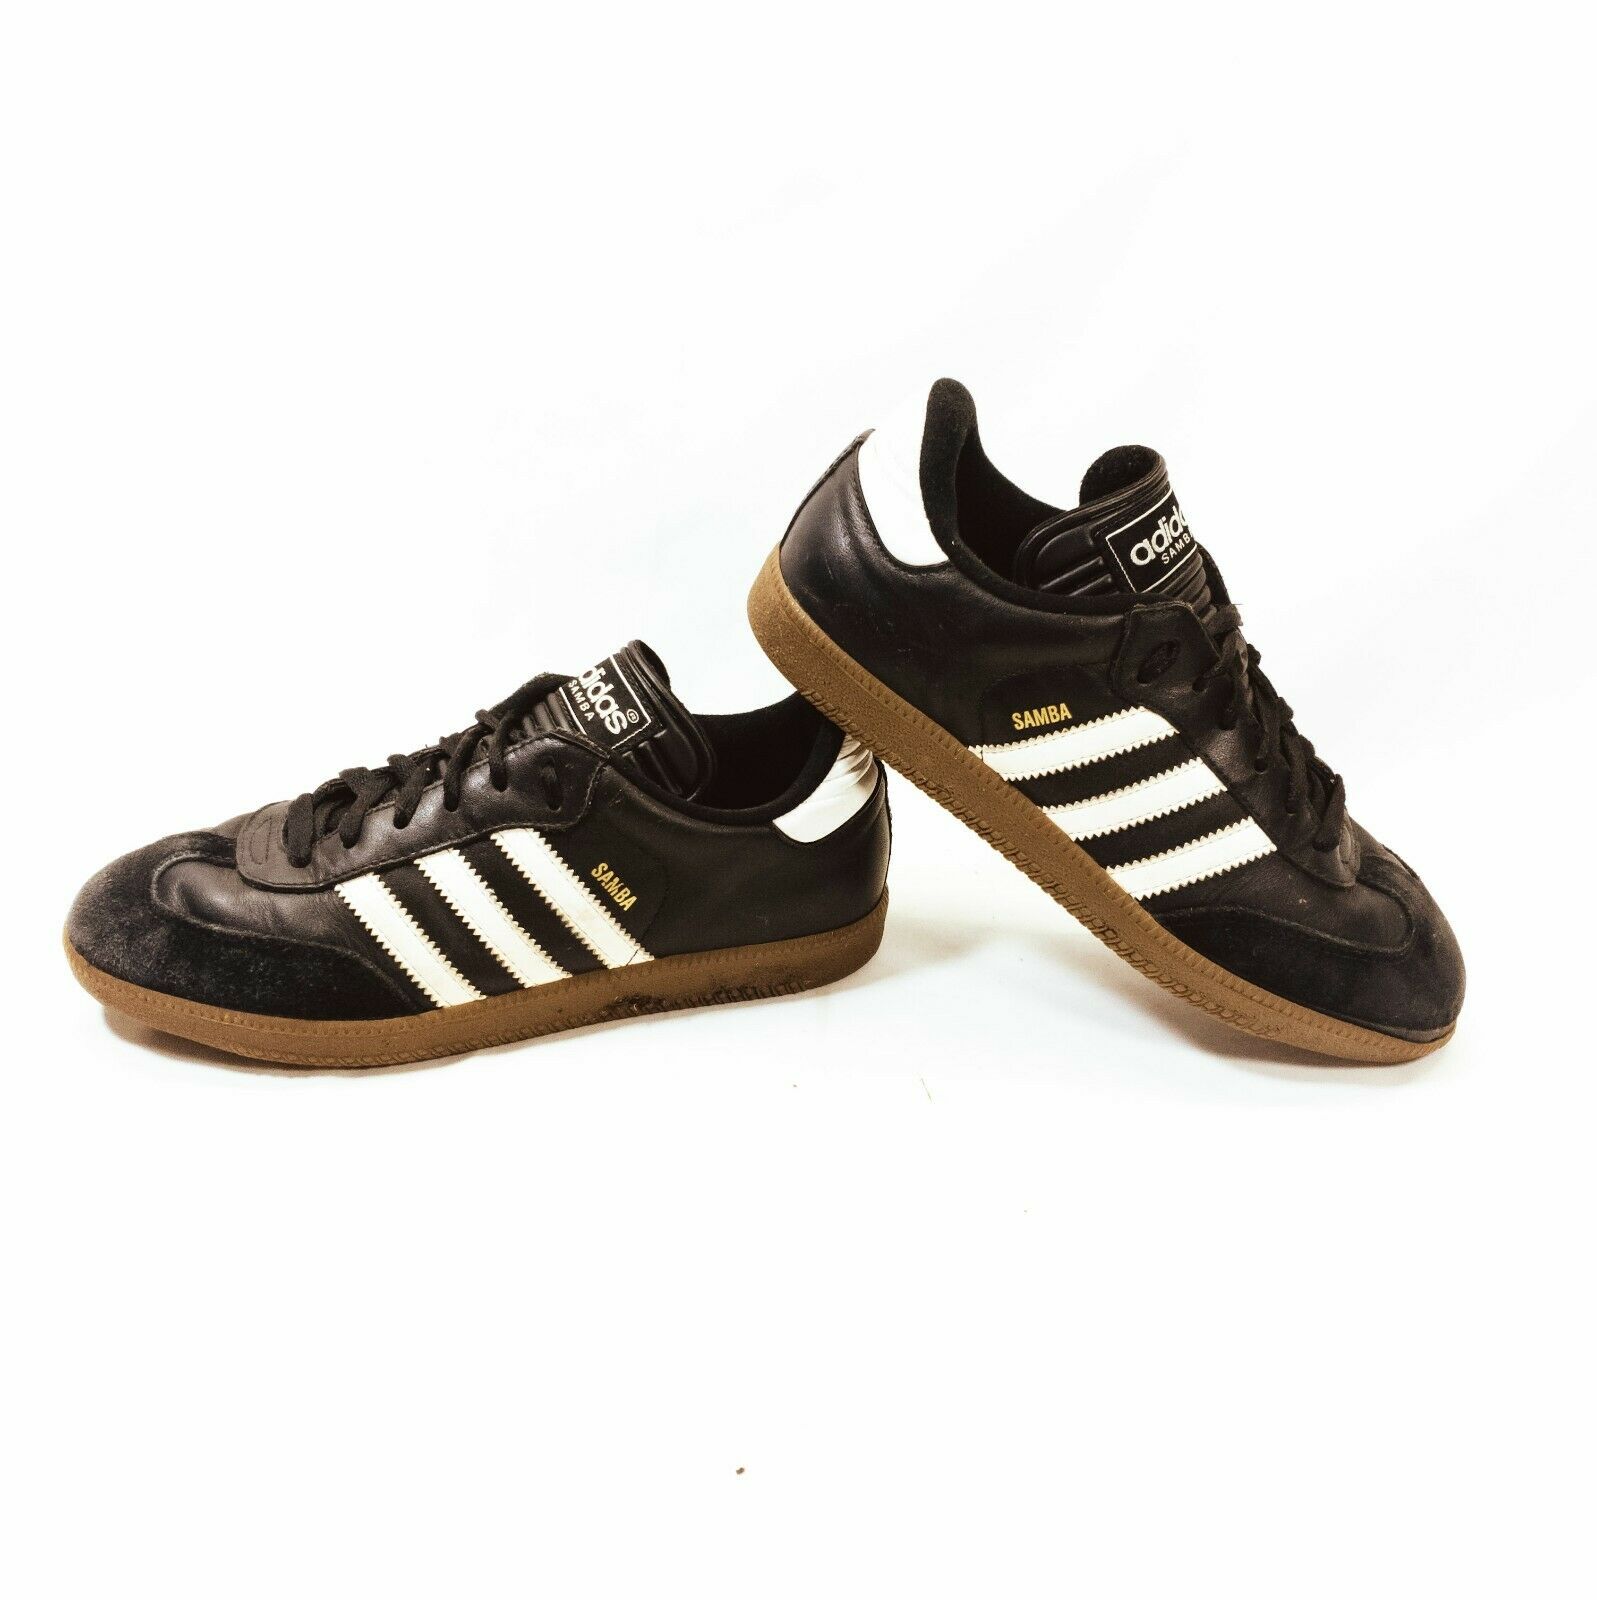 ADIDAS Samba Black/White 3 Stripe Indoor Soccer Shoes Mens Size 5.5 UK 5